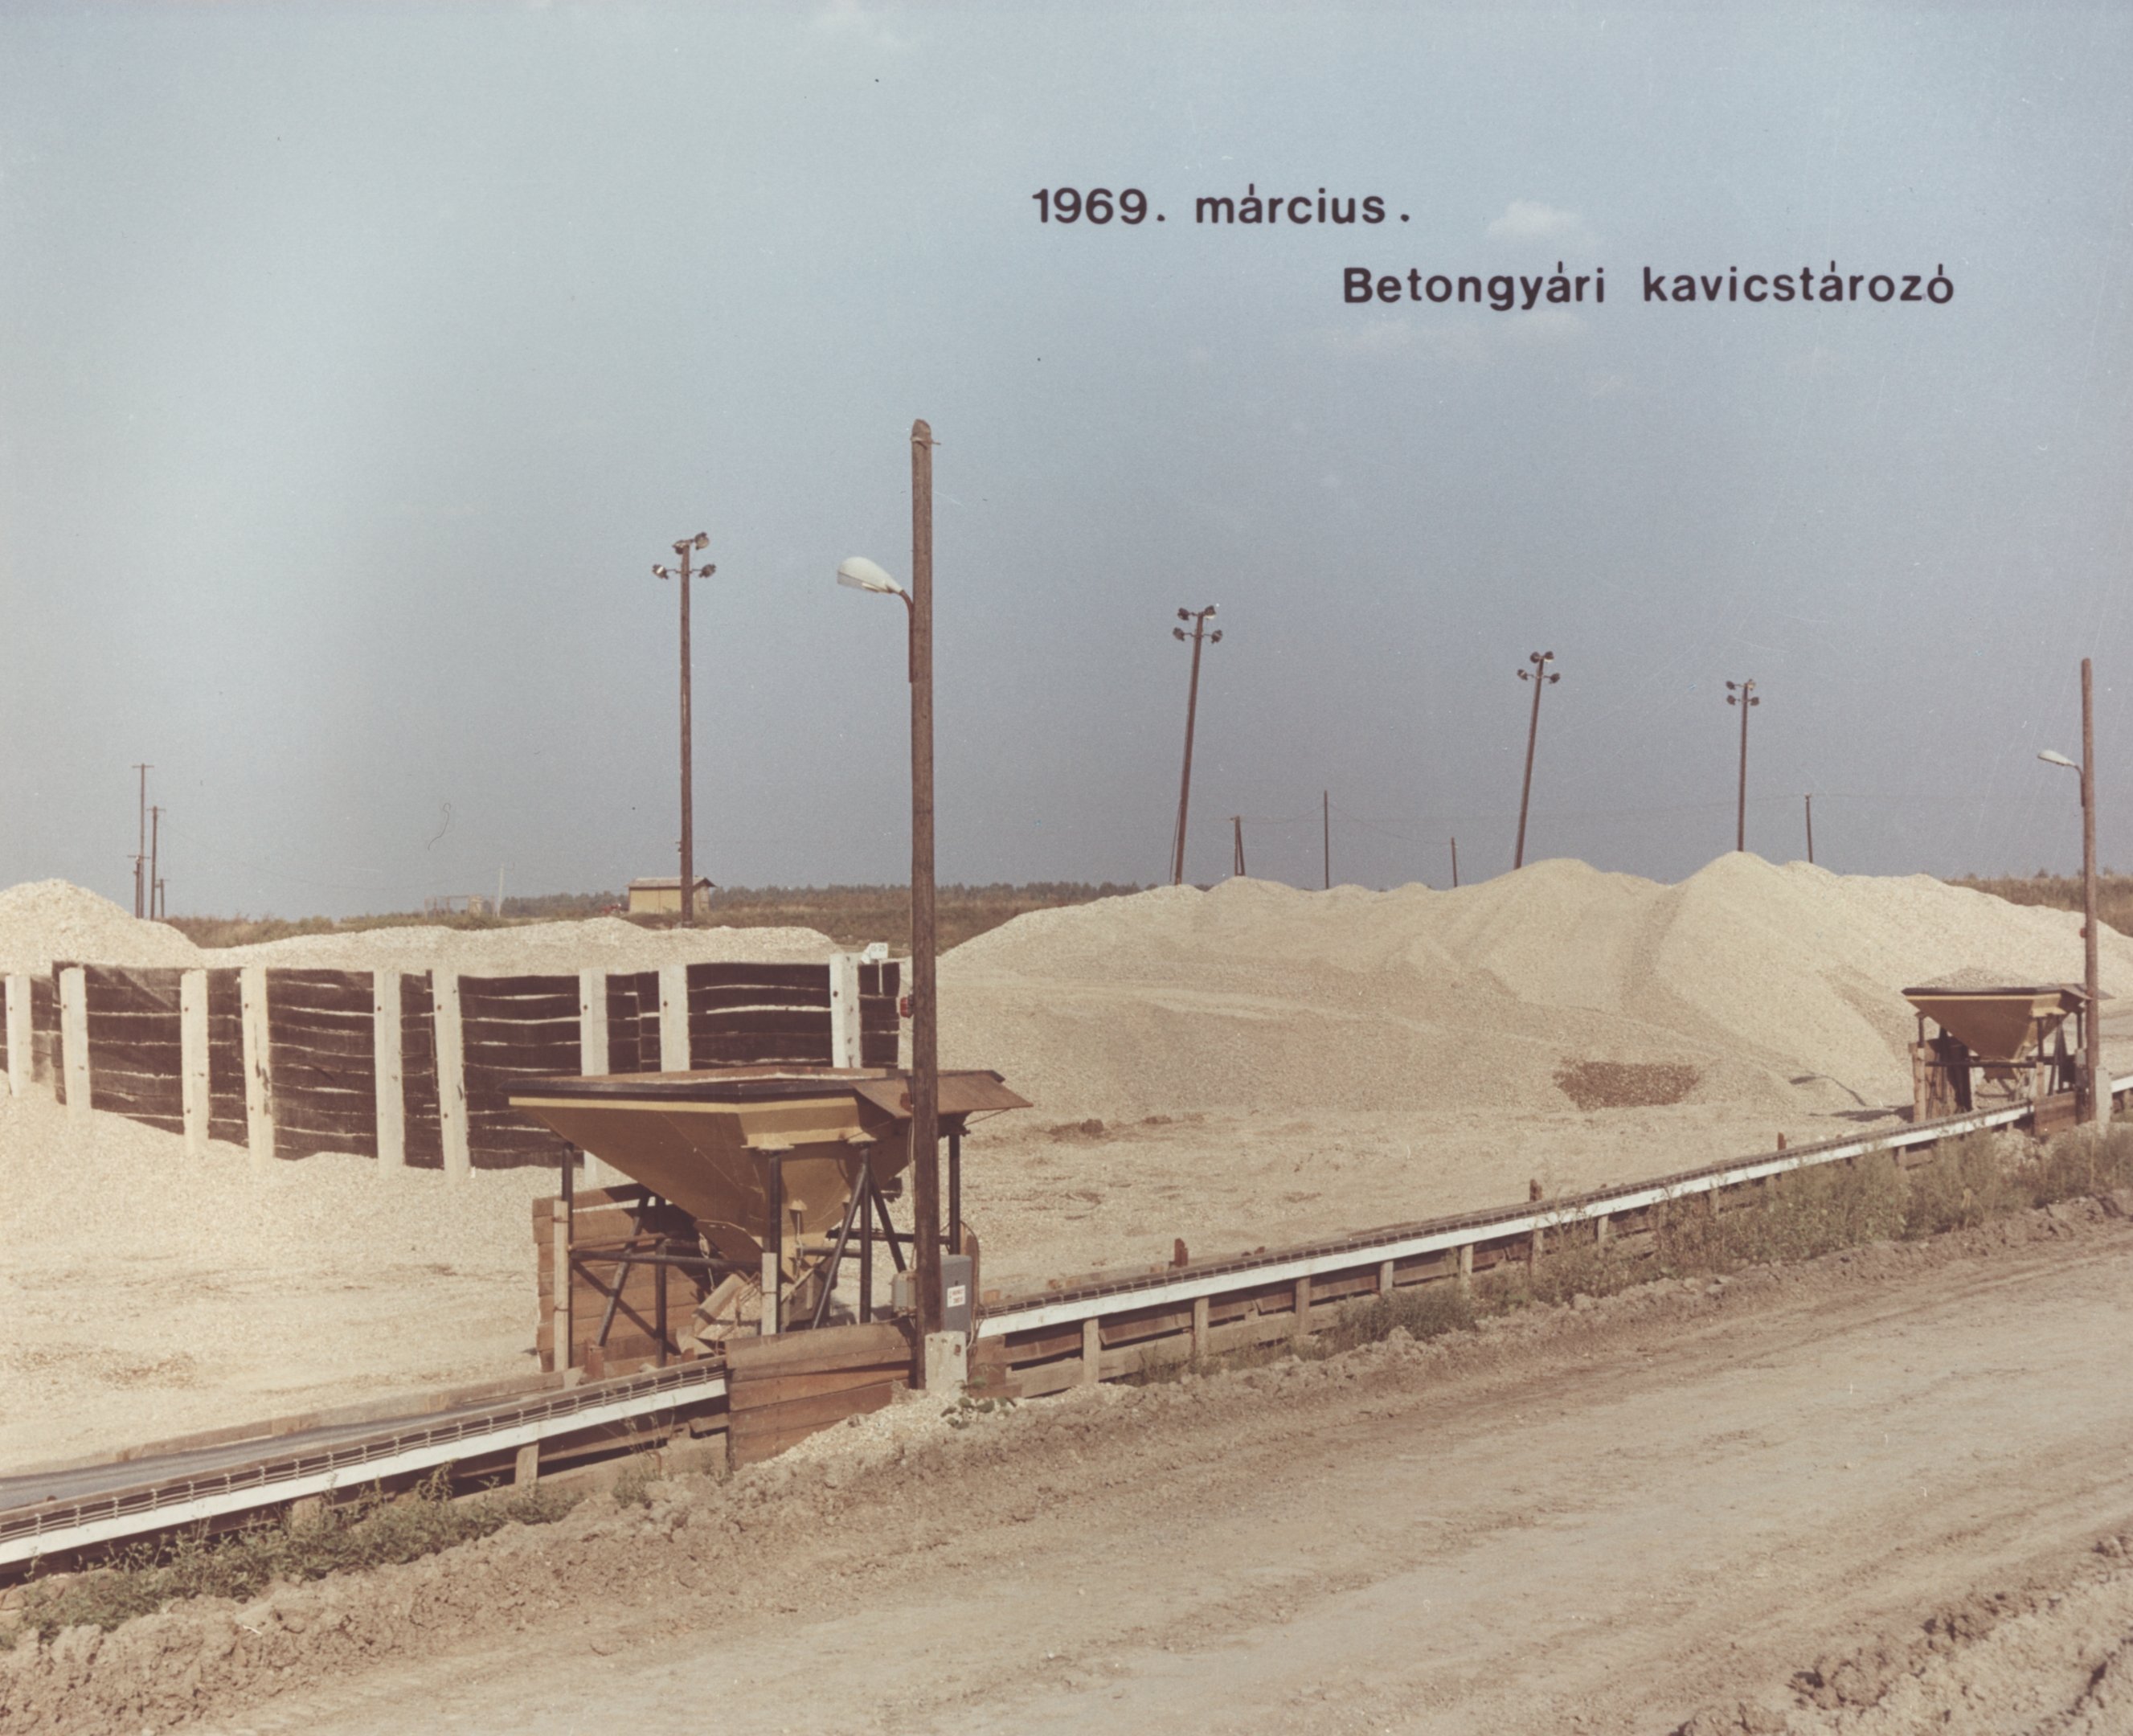 Betongyári kavicstározó, 1969. március (Magyar Környezetvédelmi és Vízügyi Múzeum - Duna Múzeum CC BY-NC-SA)